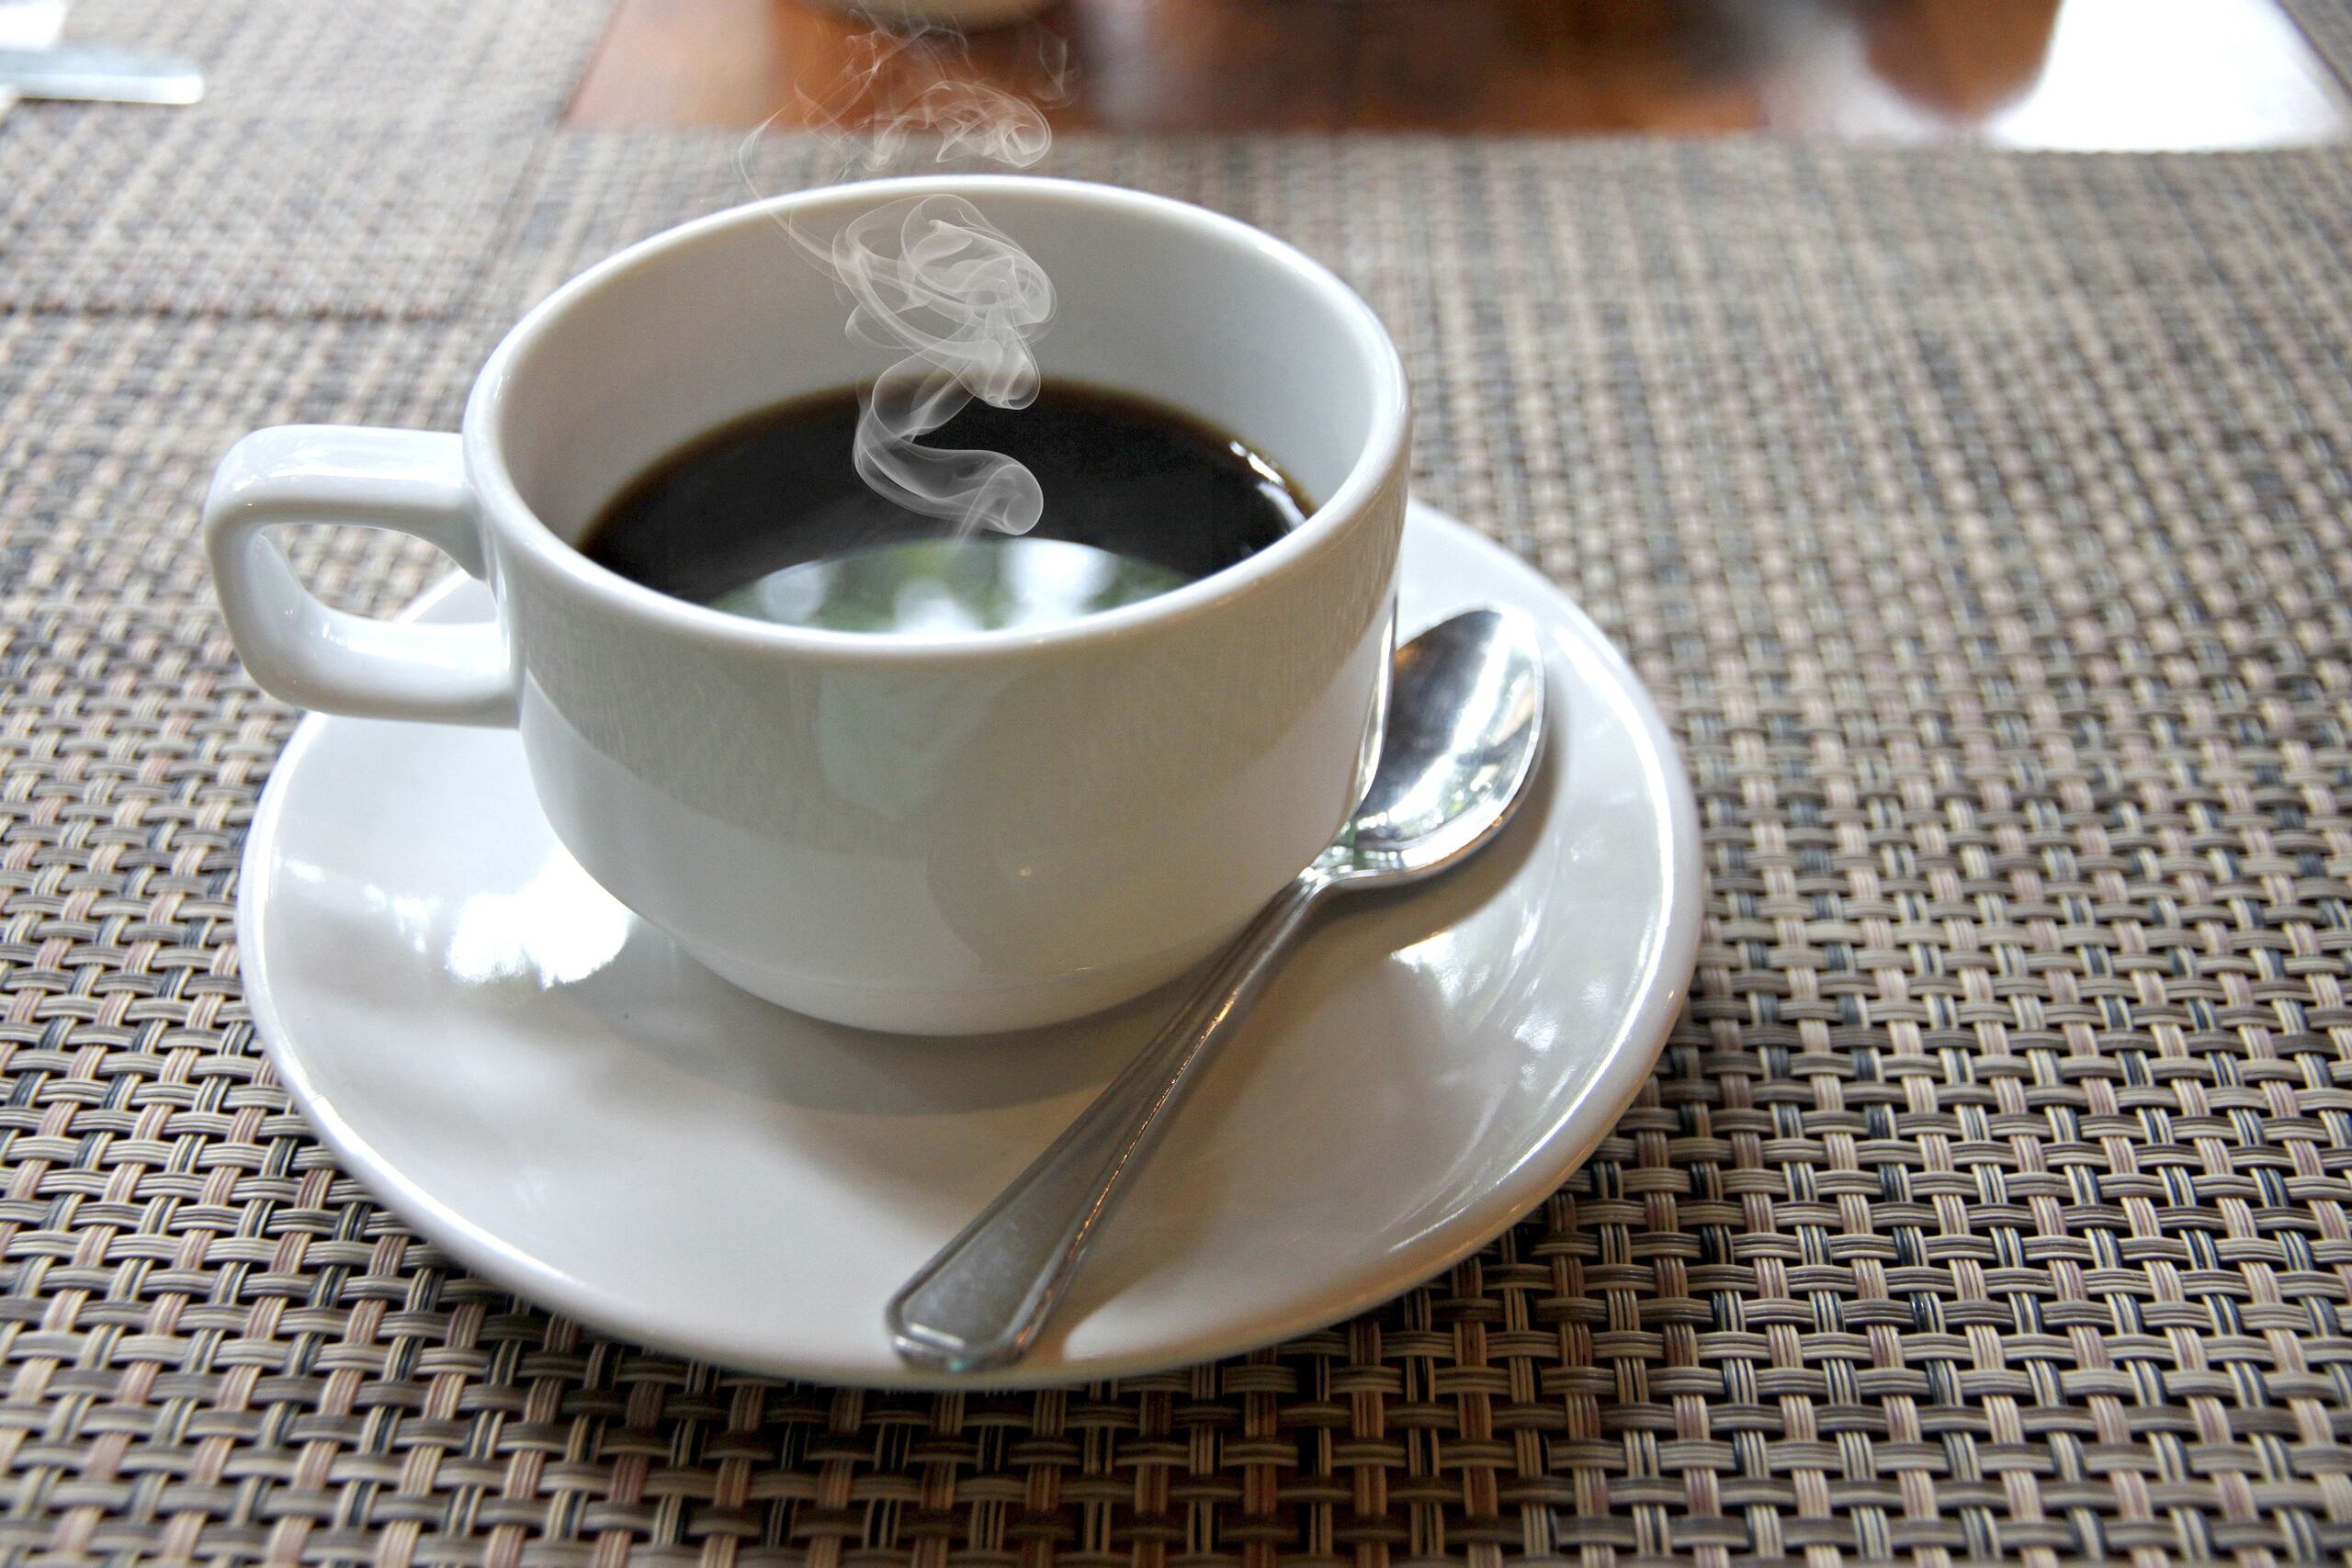 La cantidad recomendada de cafeína al día, de acuerdo con la Administración de Alimentos y Medicamentos de Estados Unidos, es de 400 miligramos, lo que equivaldría a máximo cuatro tazas de café.